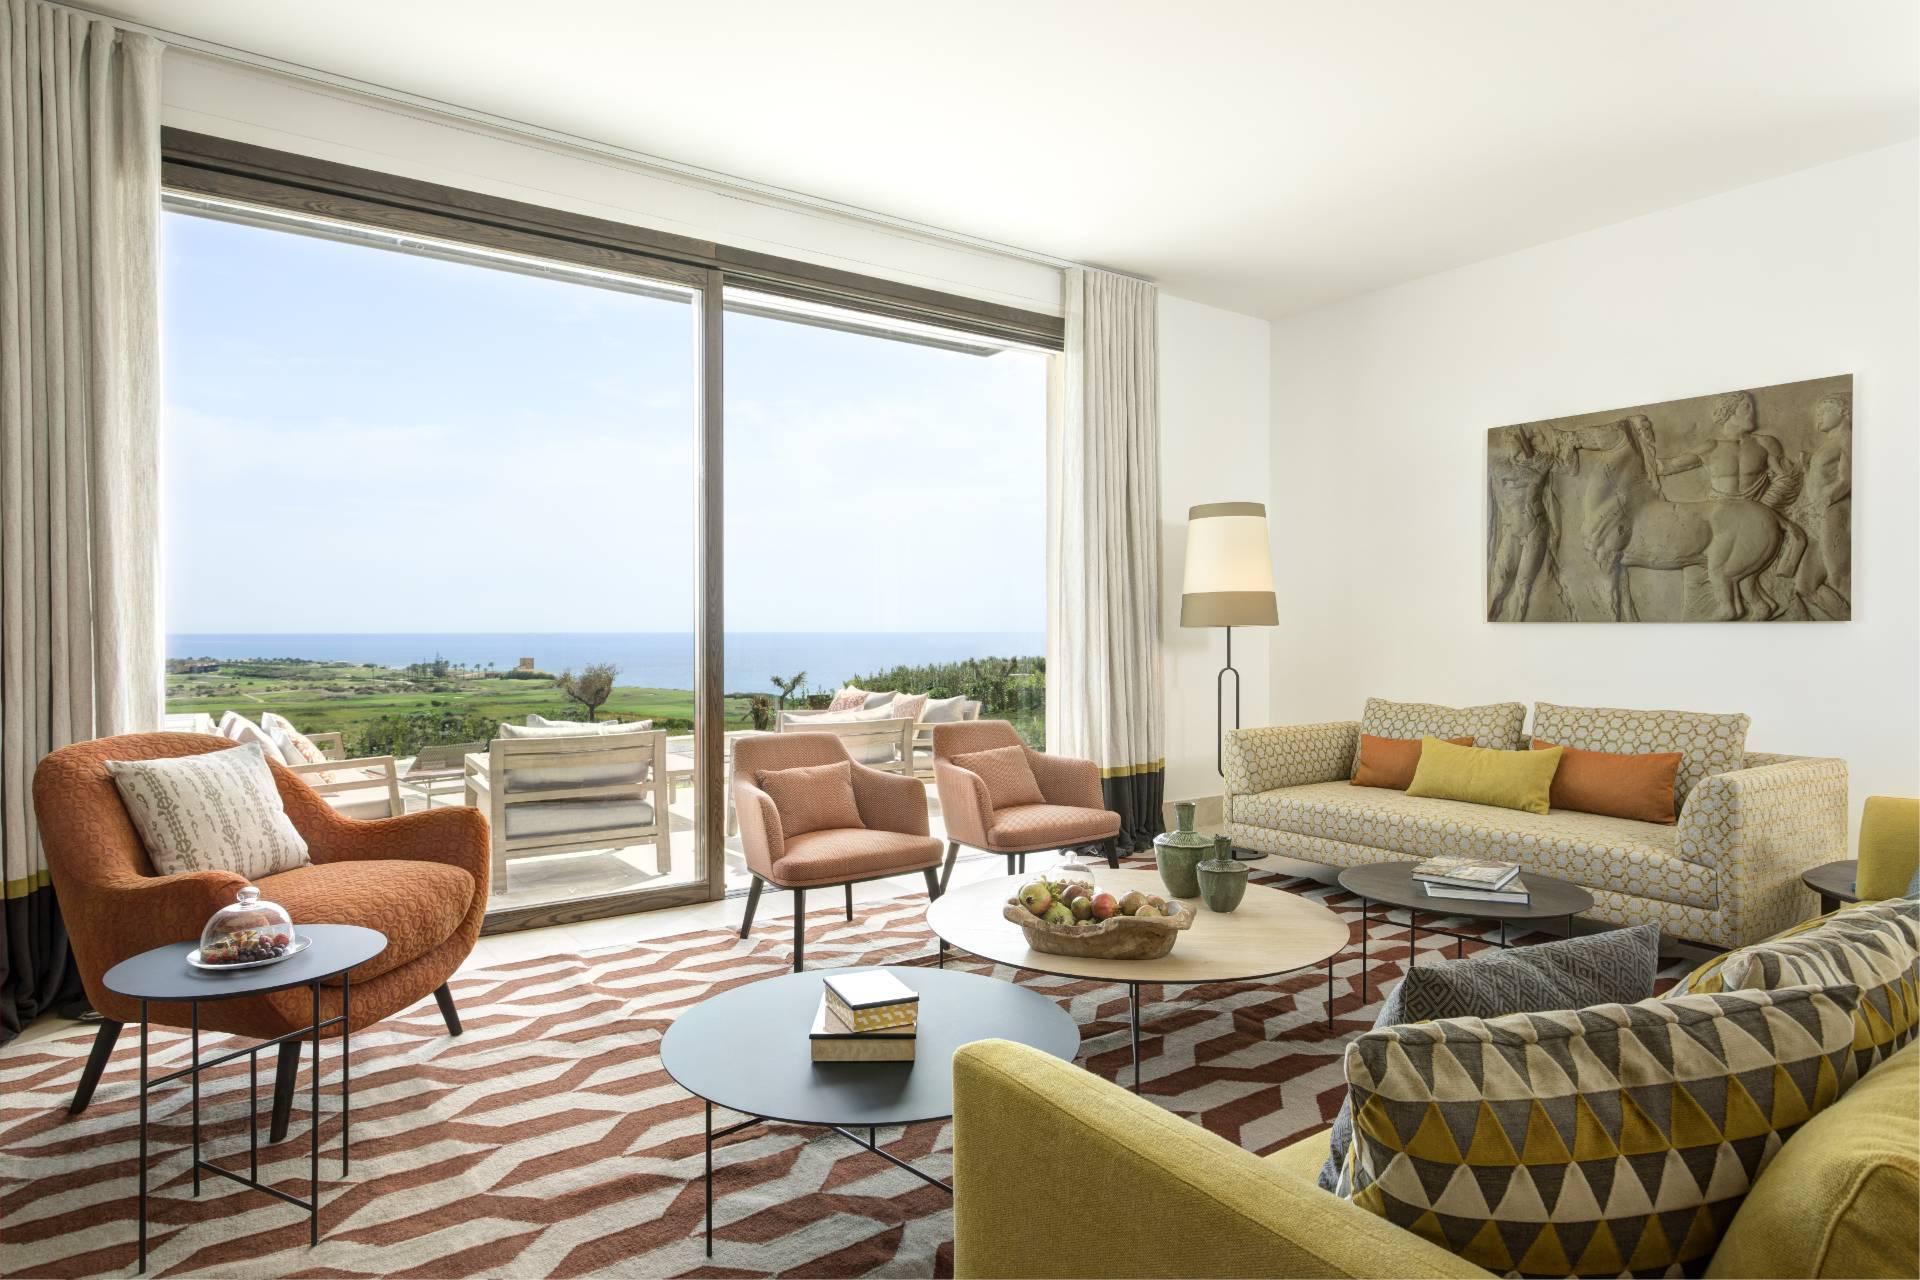 Stunning four bedroom villa overlooking southern Sicilian coast - 3